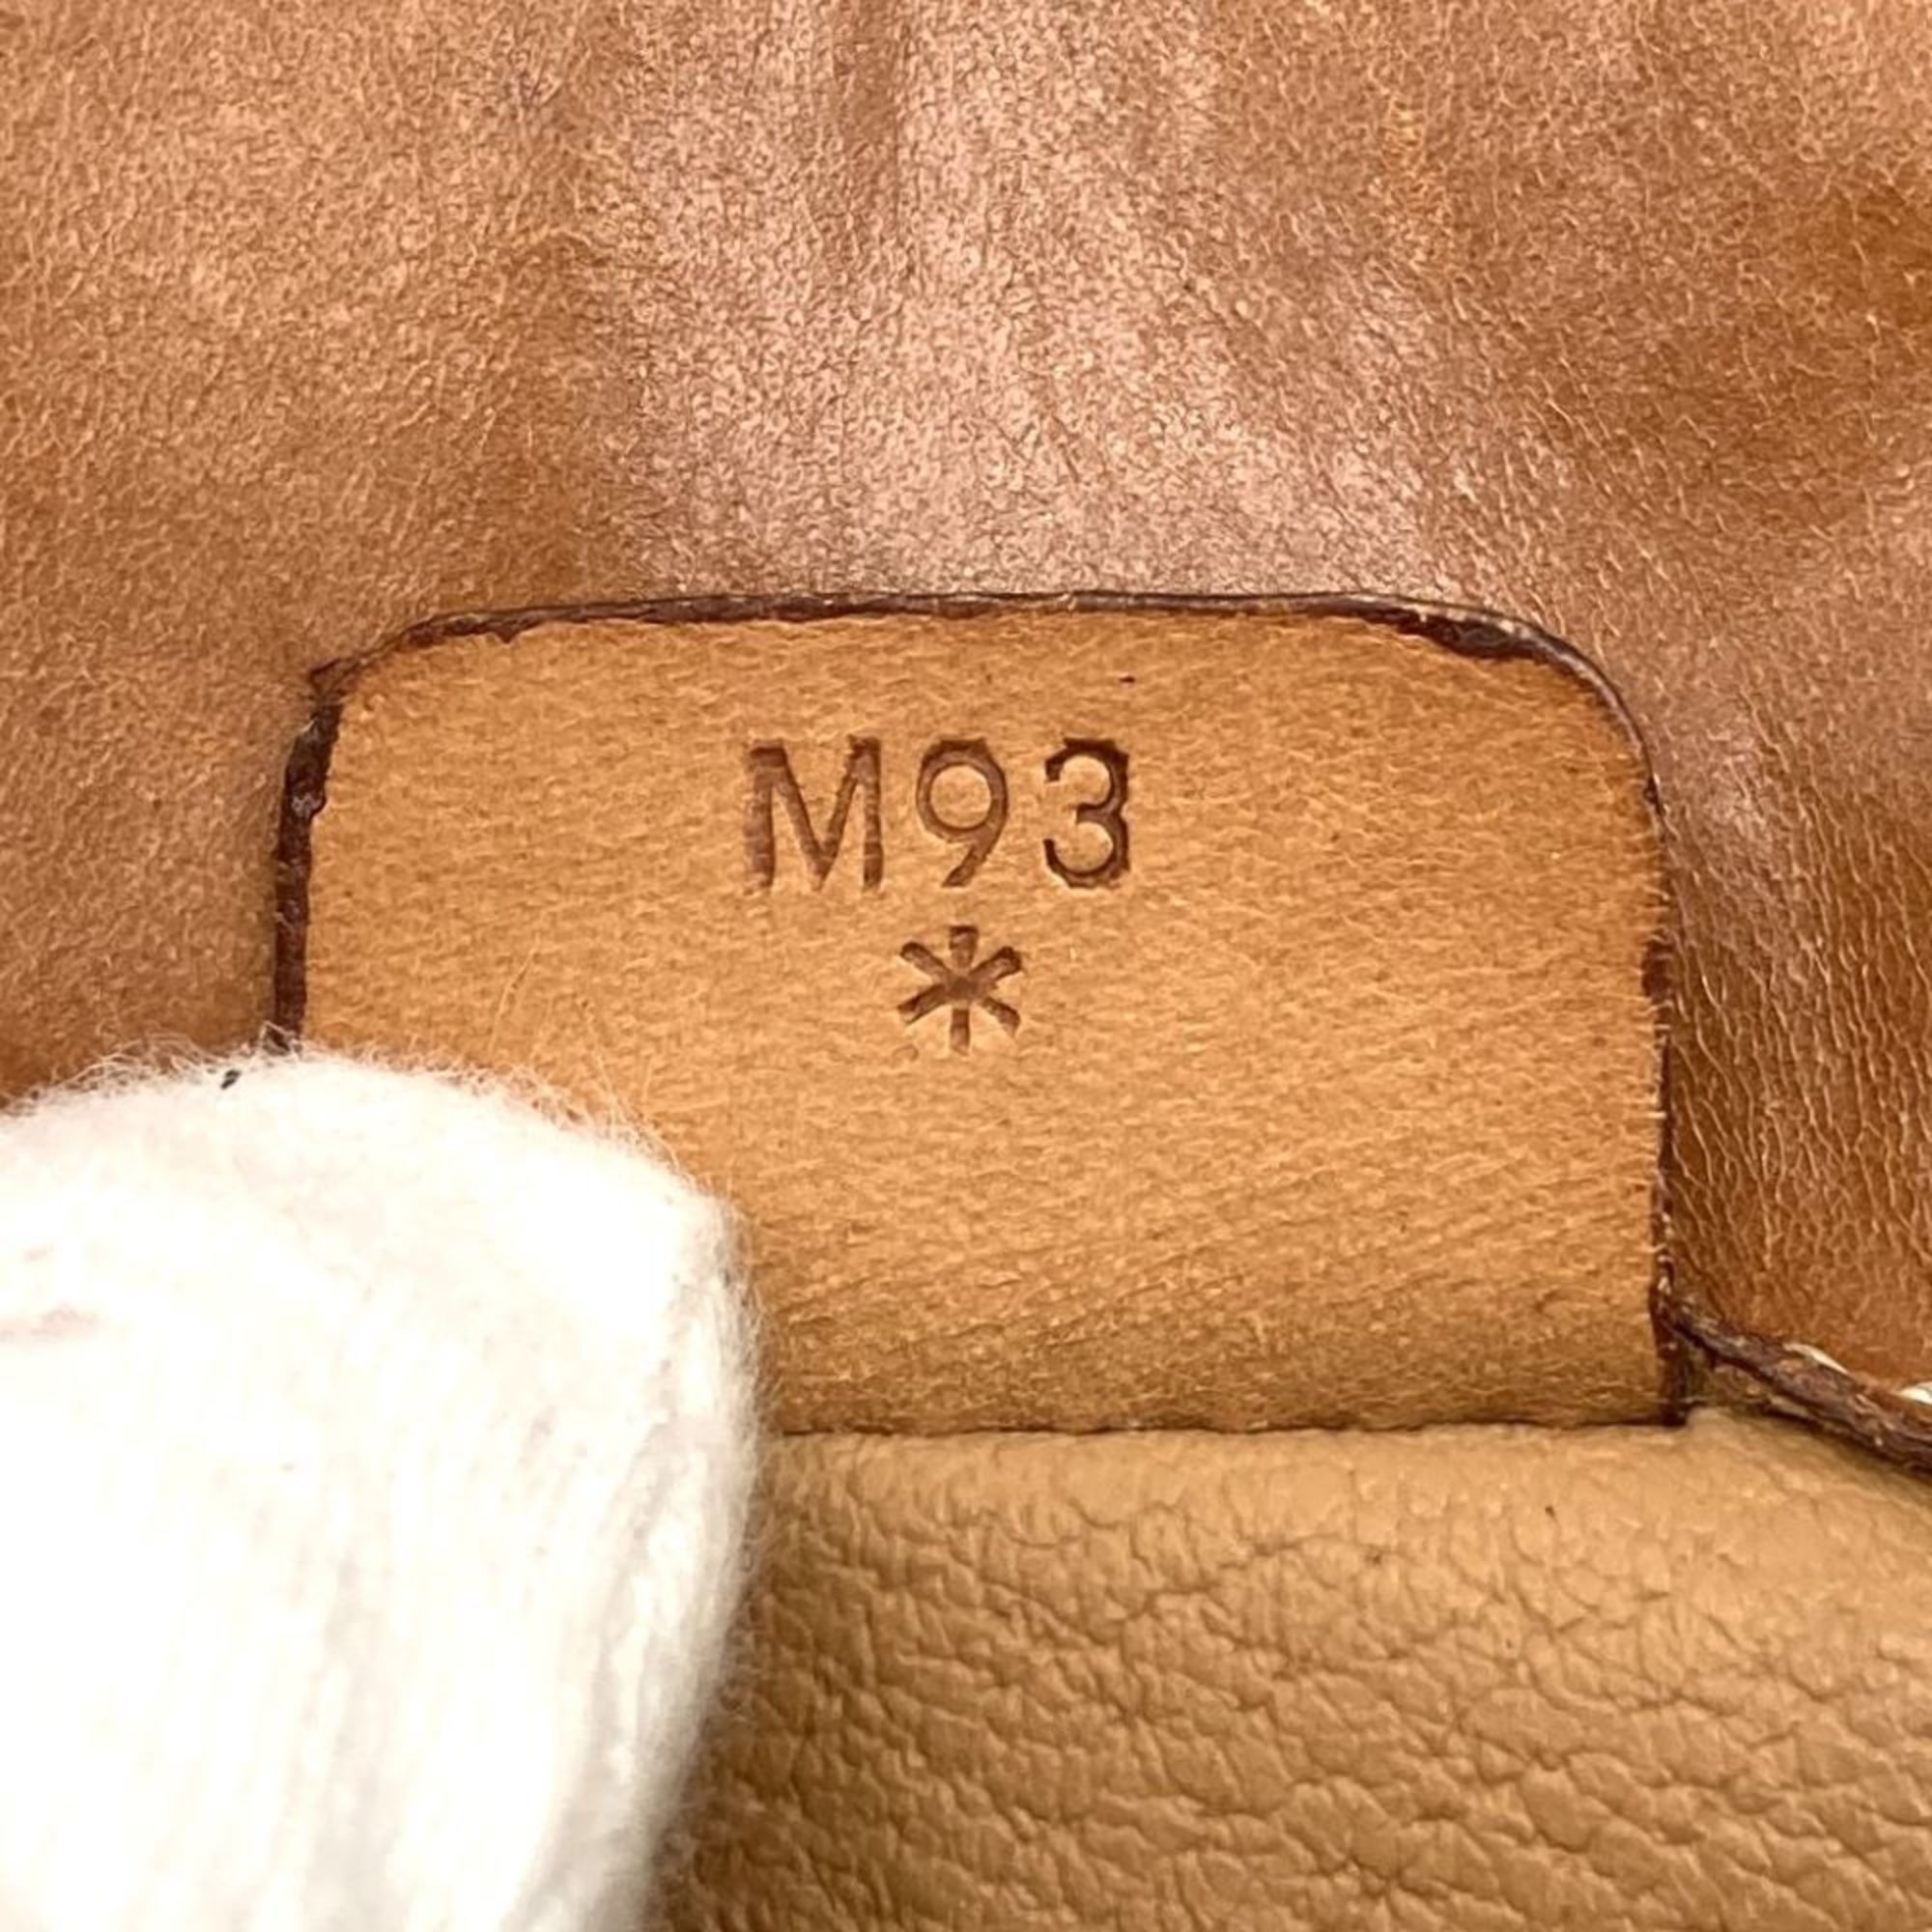 Celine shoulder bag, macadam pattern, brown leather, women's, M93 CELINE